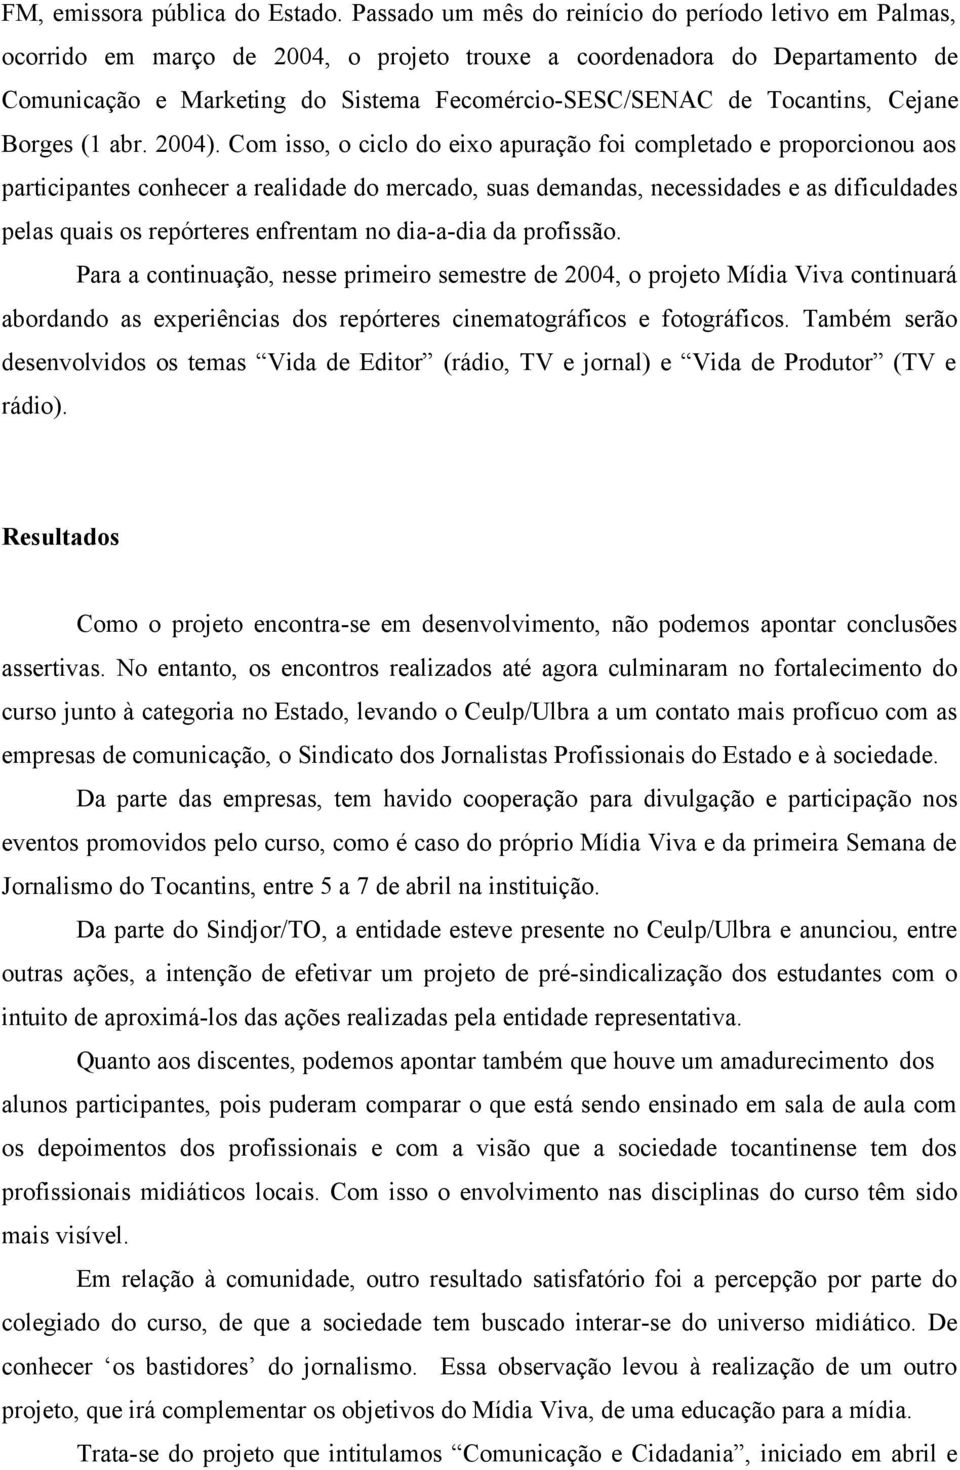 Tocantins, Cejane Borges (1 abr. 2004).